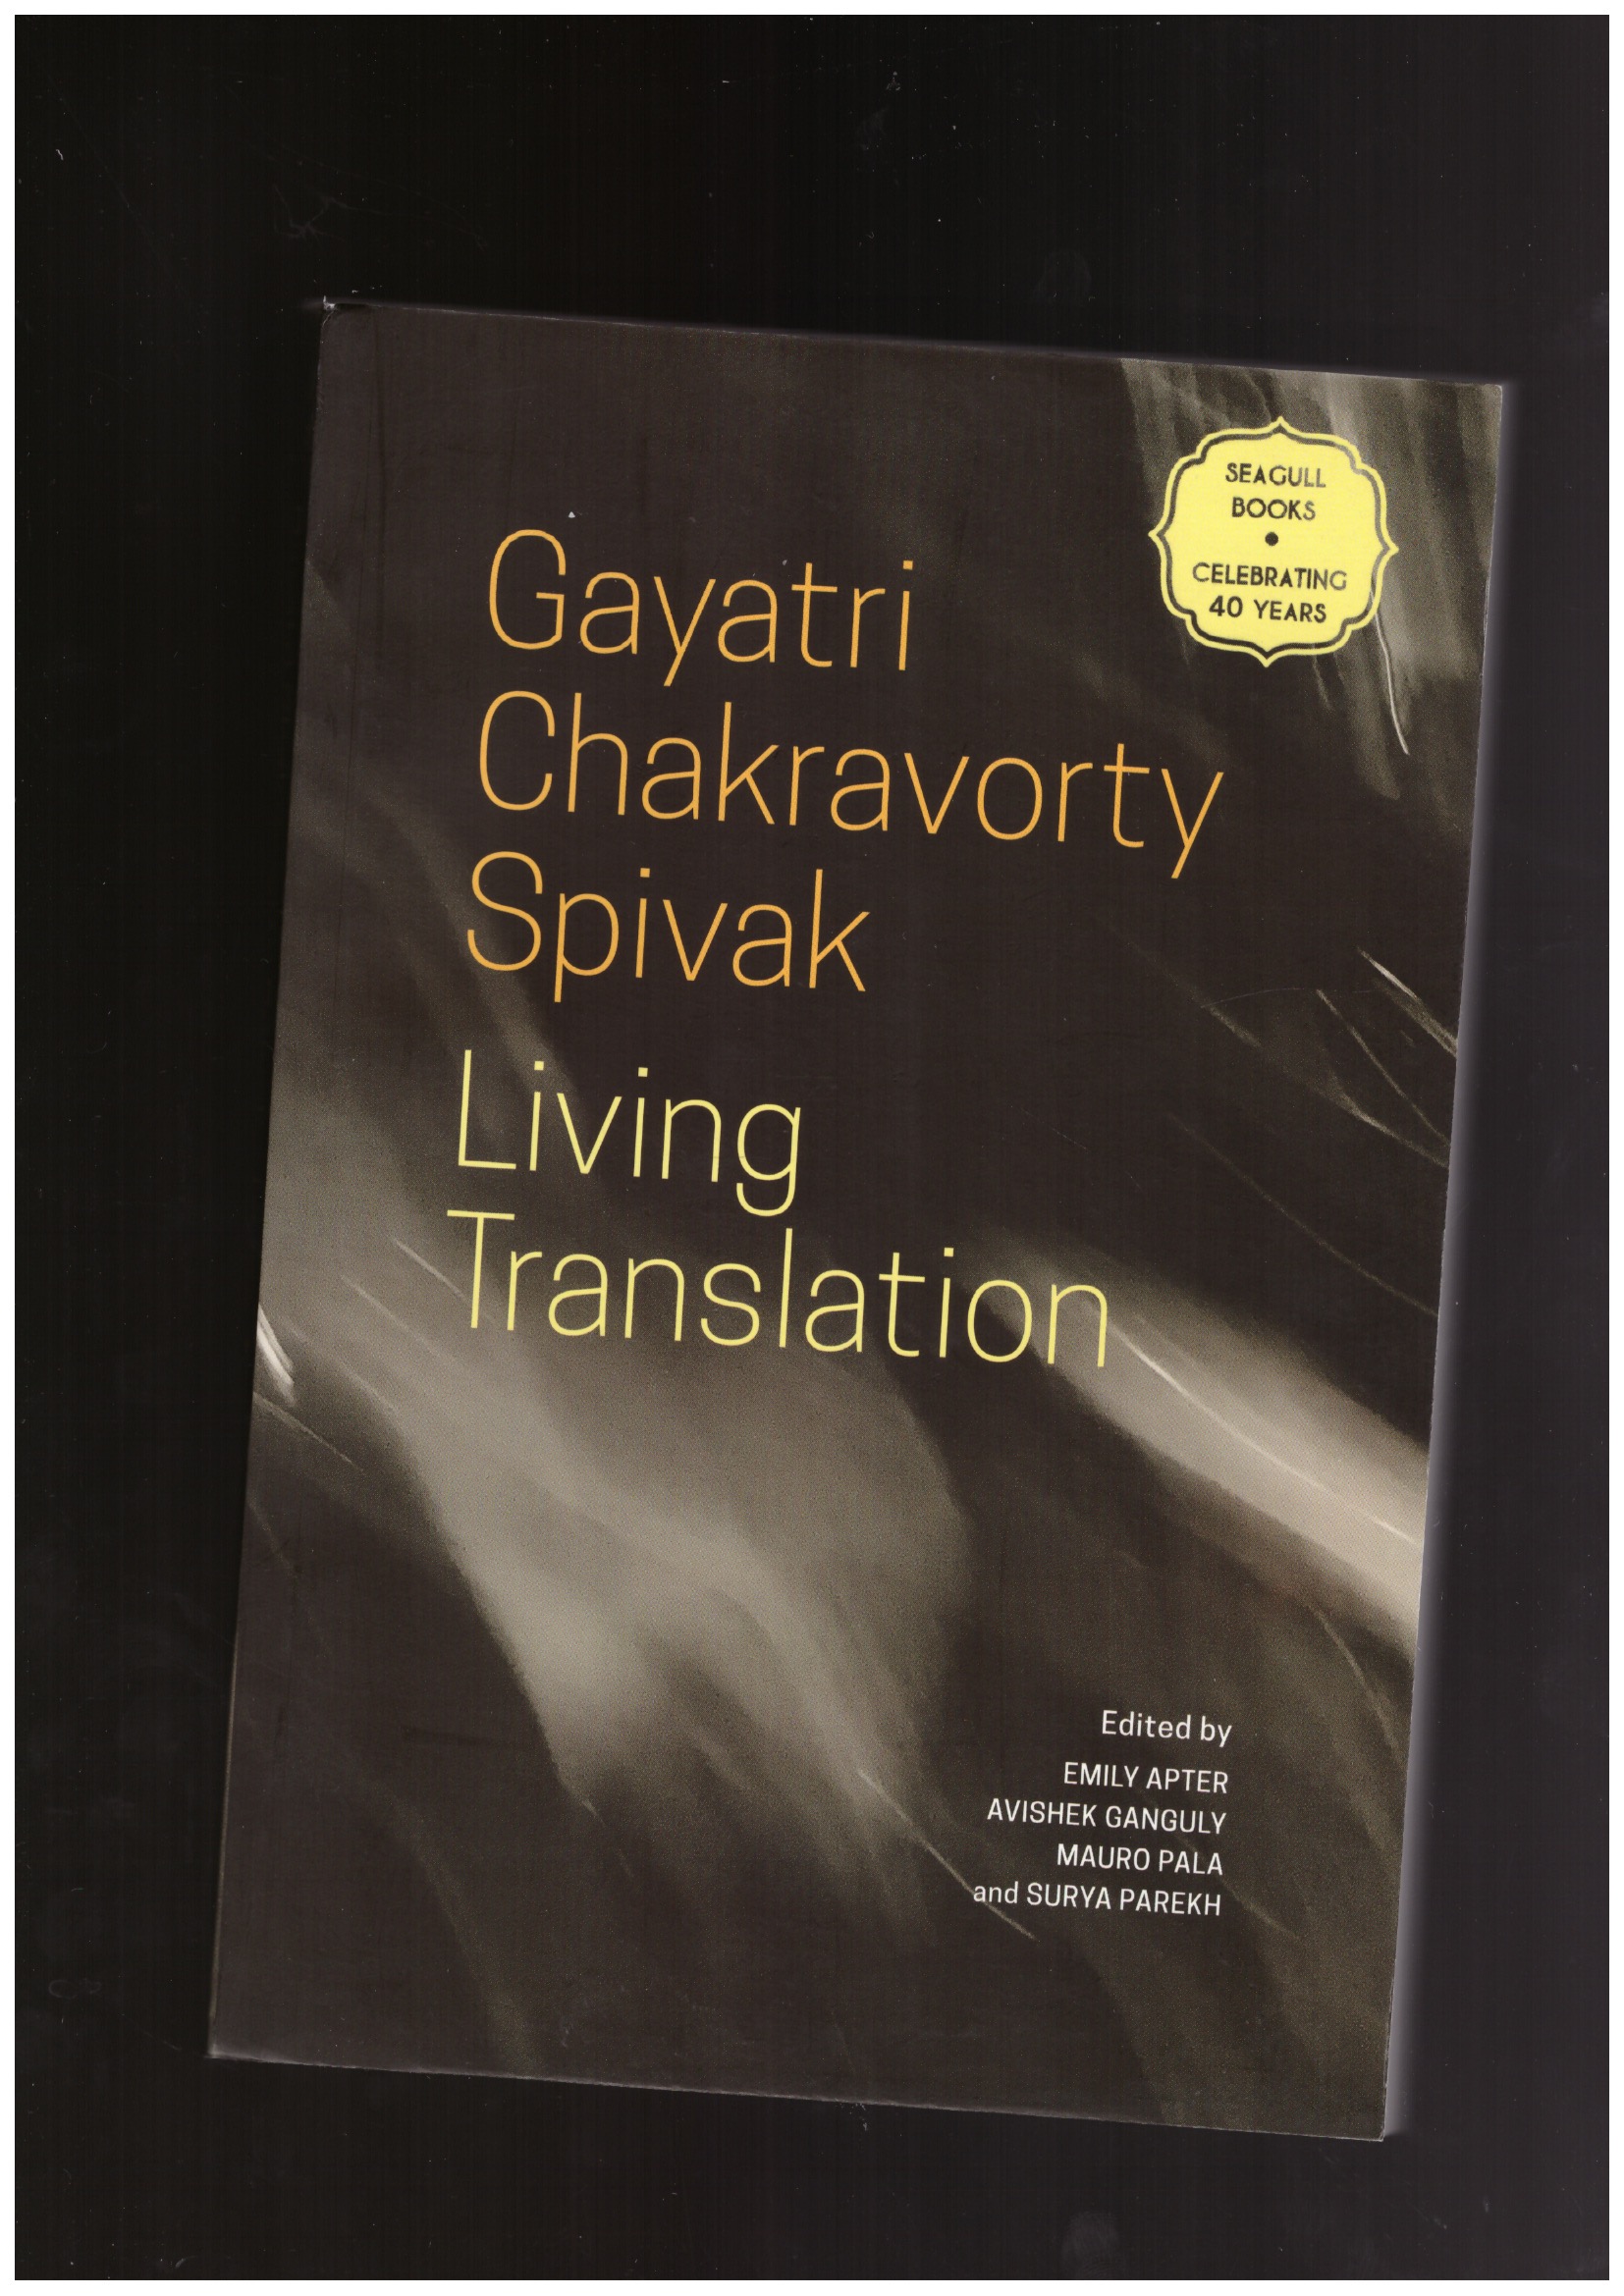 SPIVAK, Gayatri Chakravorty - Living Translation